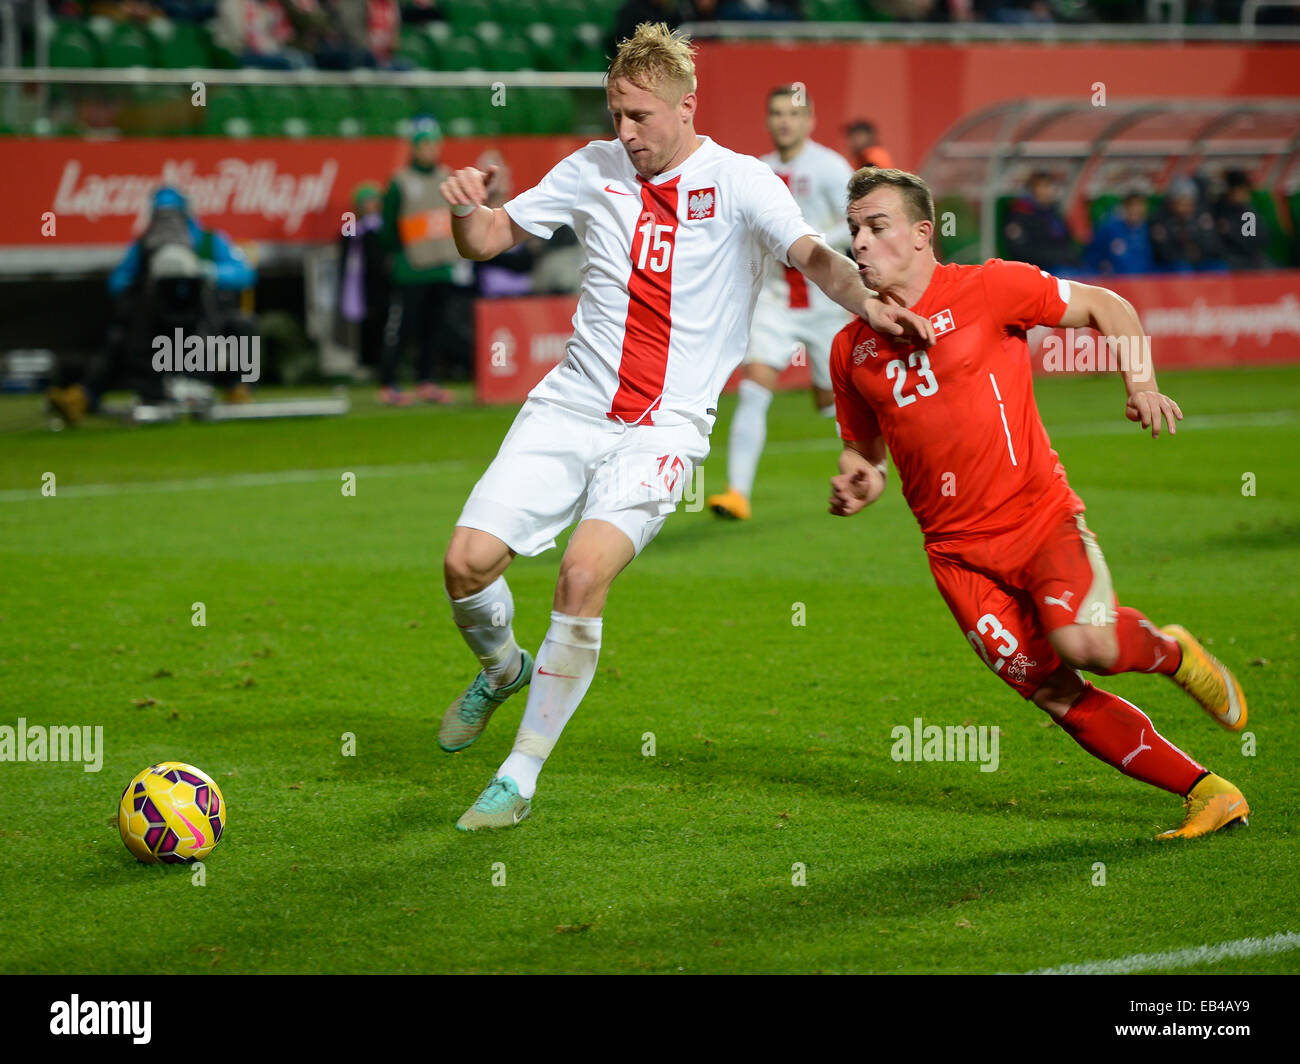 WROCLAW, Pologne - 18 NOVEMBRE 2014 : Kamil Glik (15) et Xherdan Shaqiri (23) en action au cours de match Pologne - Suisse 2:2. Banque D'Images